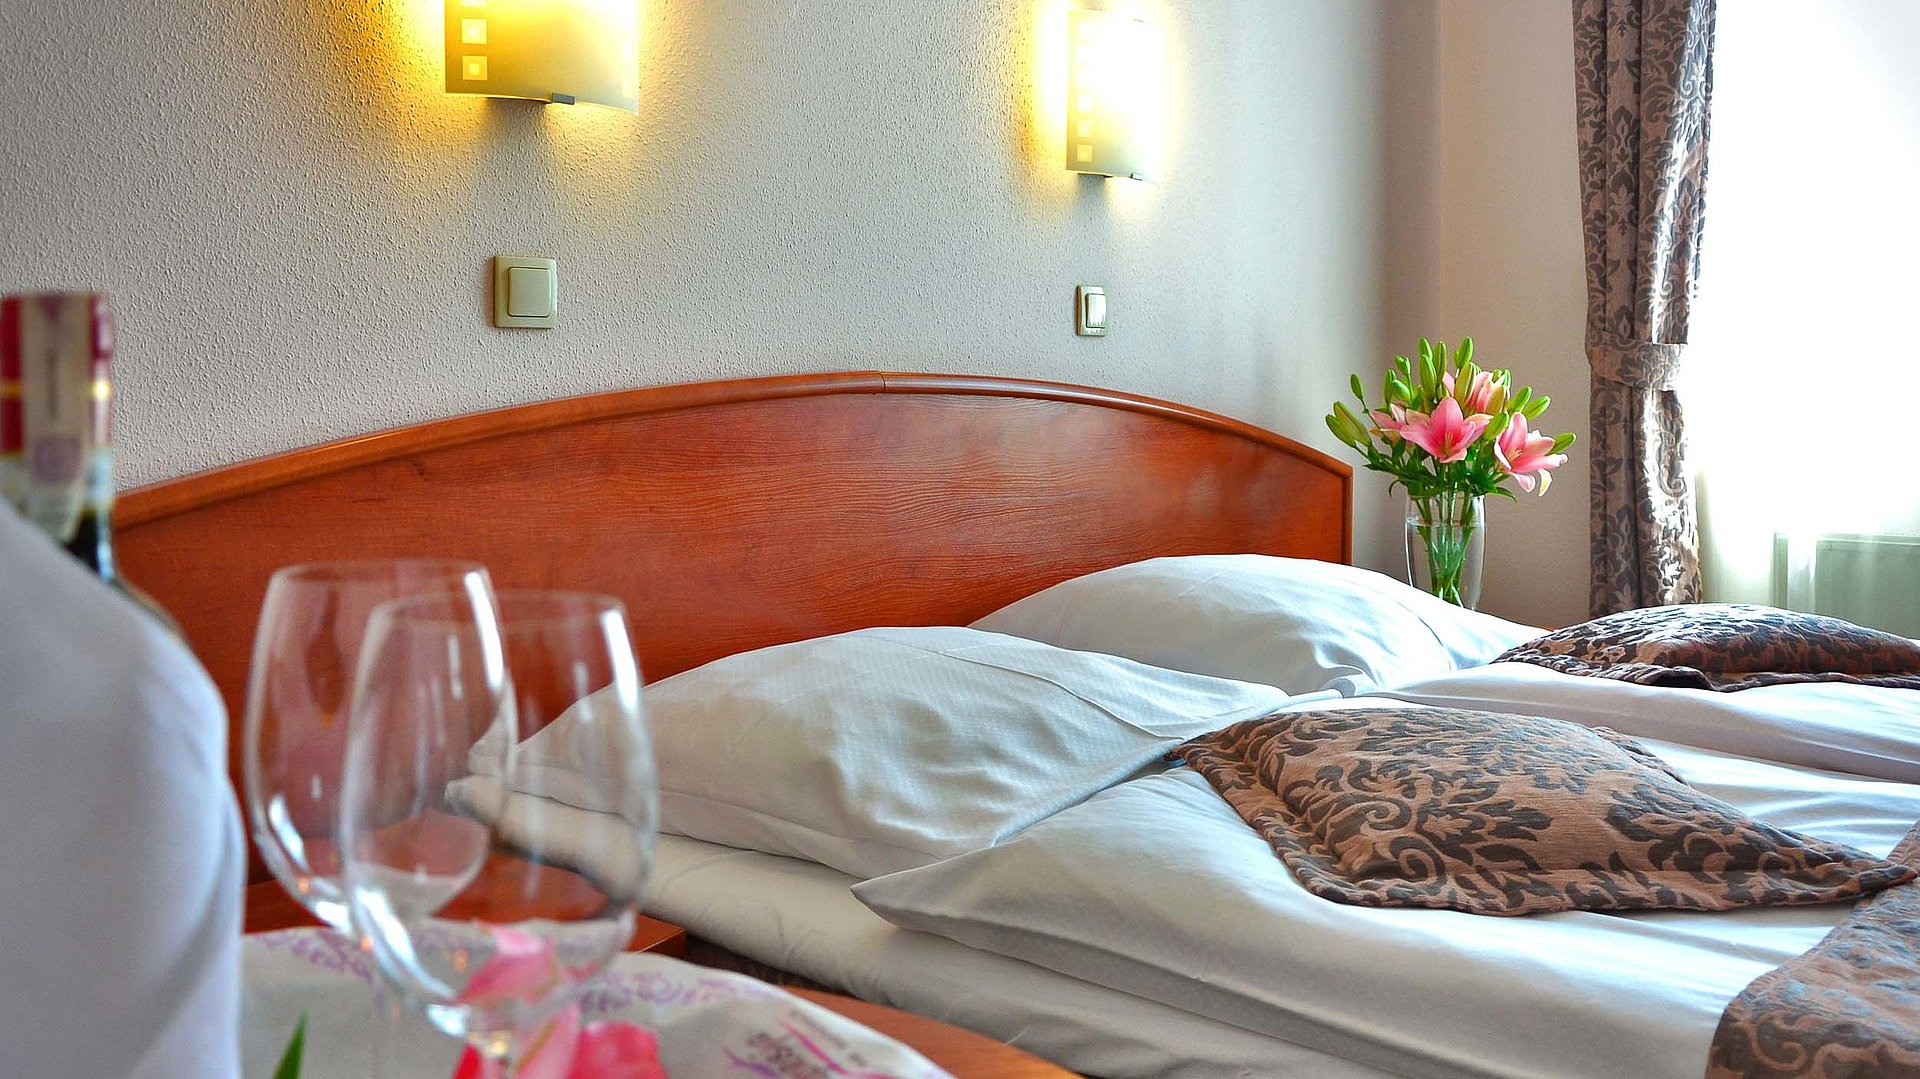 NürnbergMesse - Nahgelegene Hotels und exklusive Shoppingerlebnisse - sehr ordentliches Hotelbett mit Blumen auf dem Nachttisch und Weingläsern auf dem Esstisch